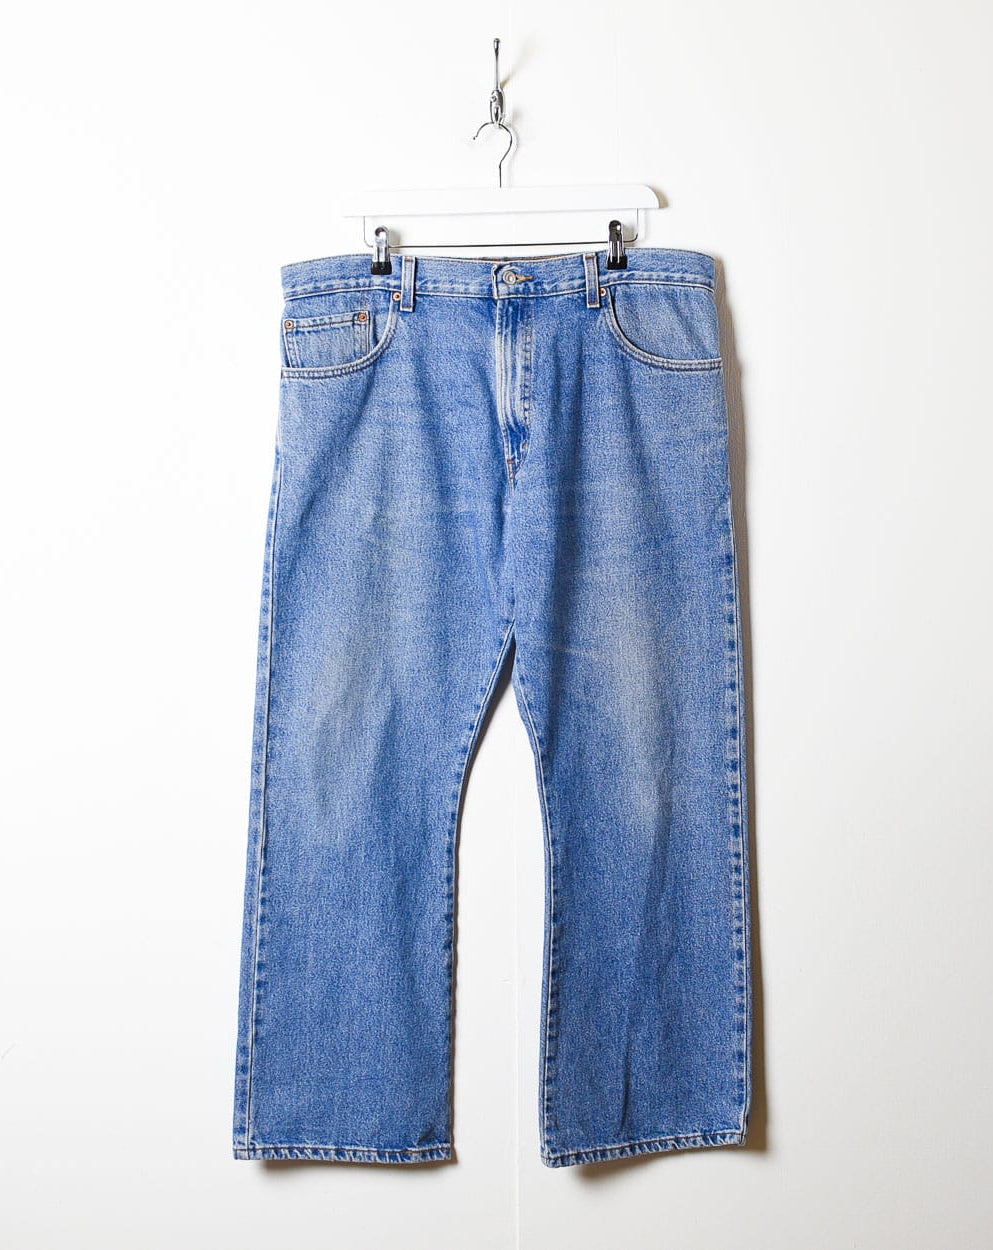 Blue Levi's 517 Jeans - W38 L29